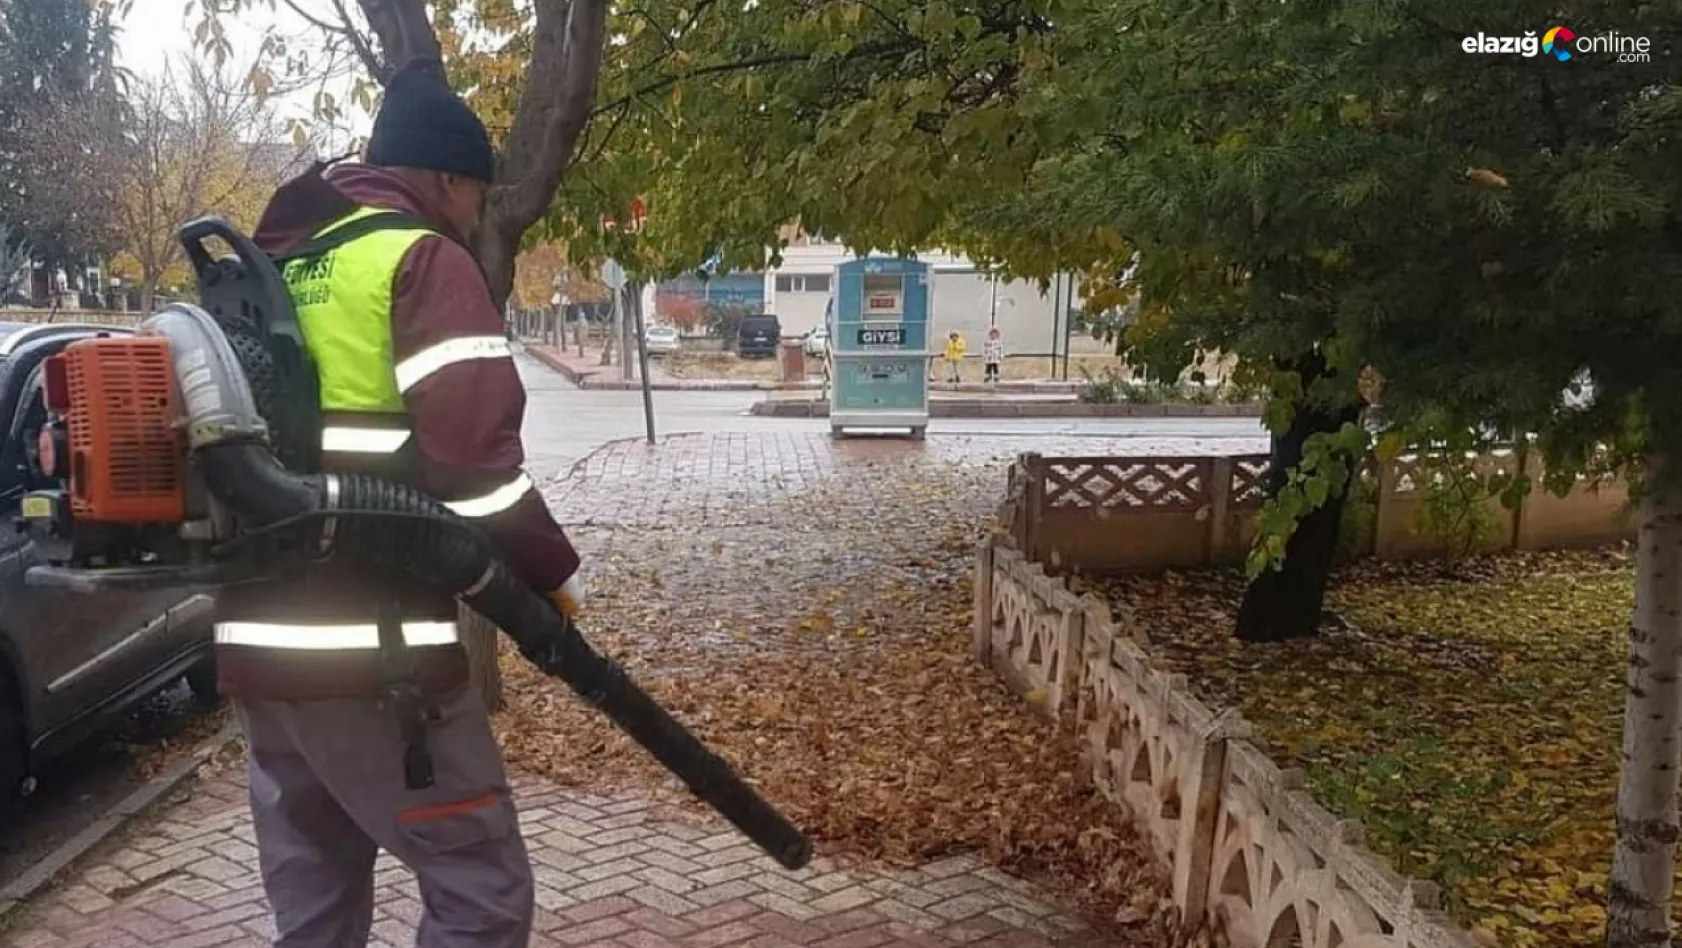 Elazığ Belediyesi ekipleri park ve bahçelerde sonbahar temizliğine başladı